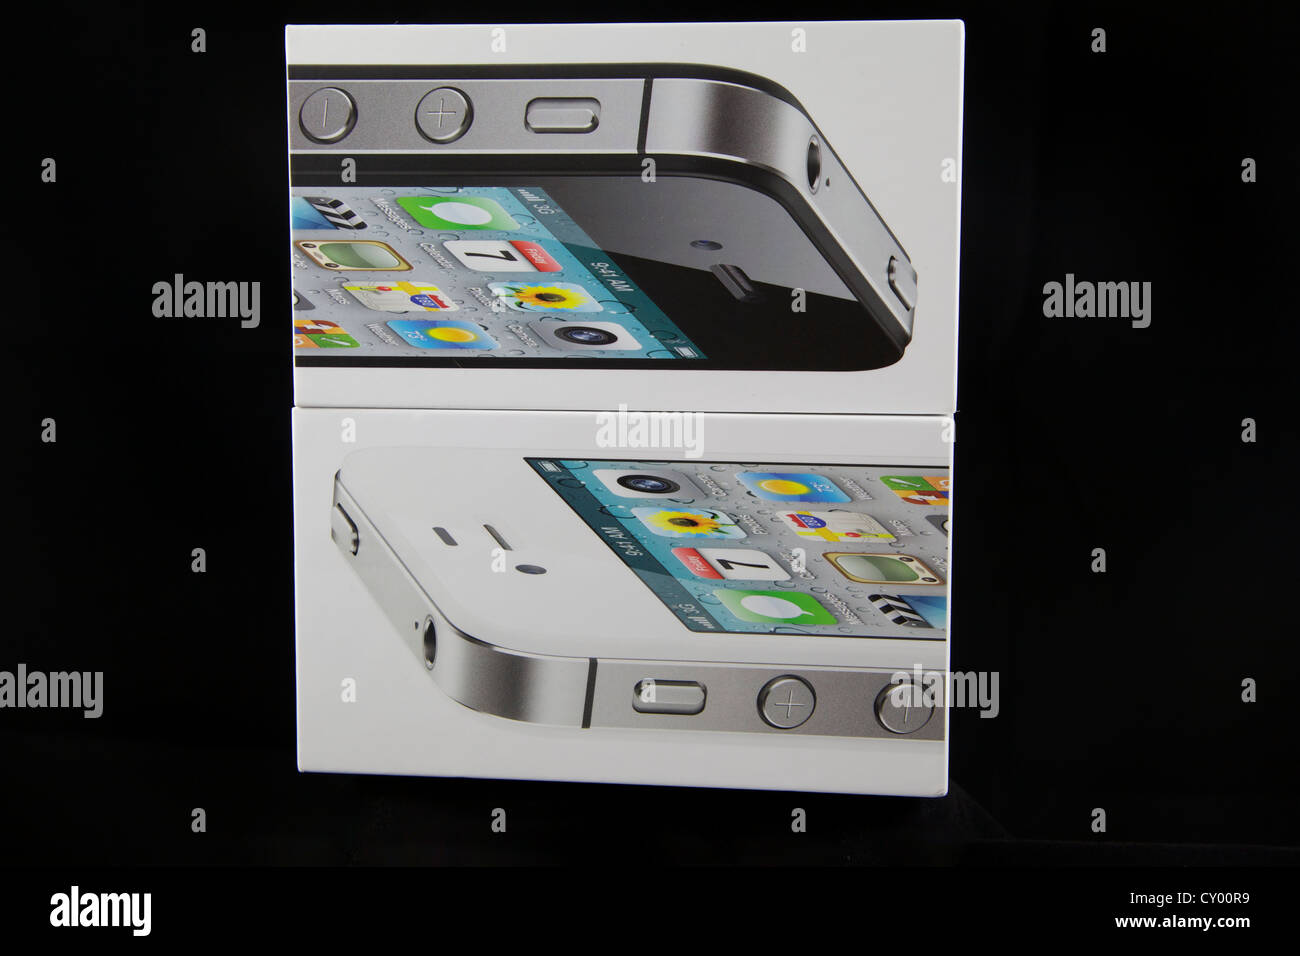 Verpackungskästen für iPhone 4 schwarz / weiß s Stockfoto